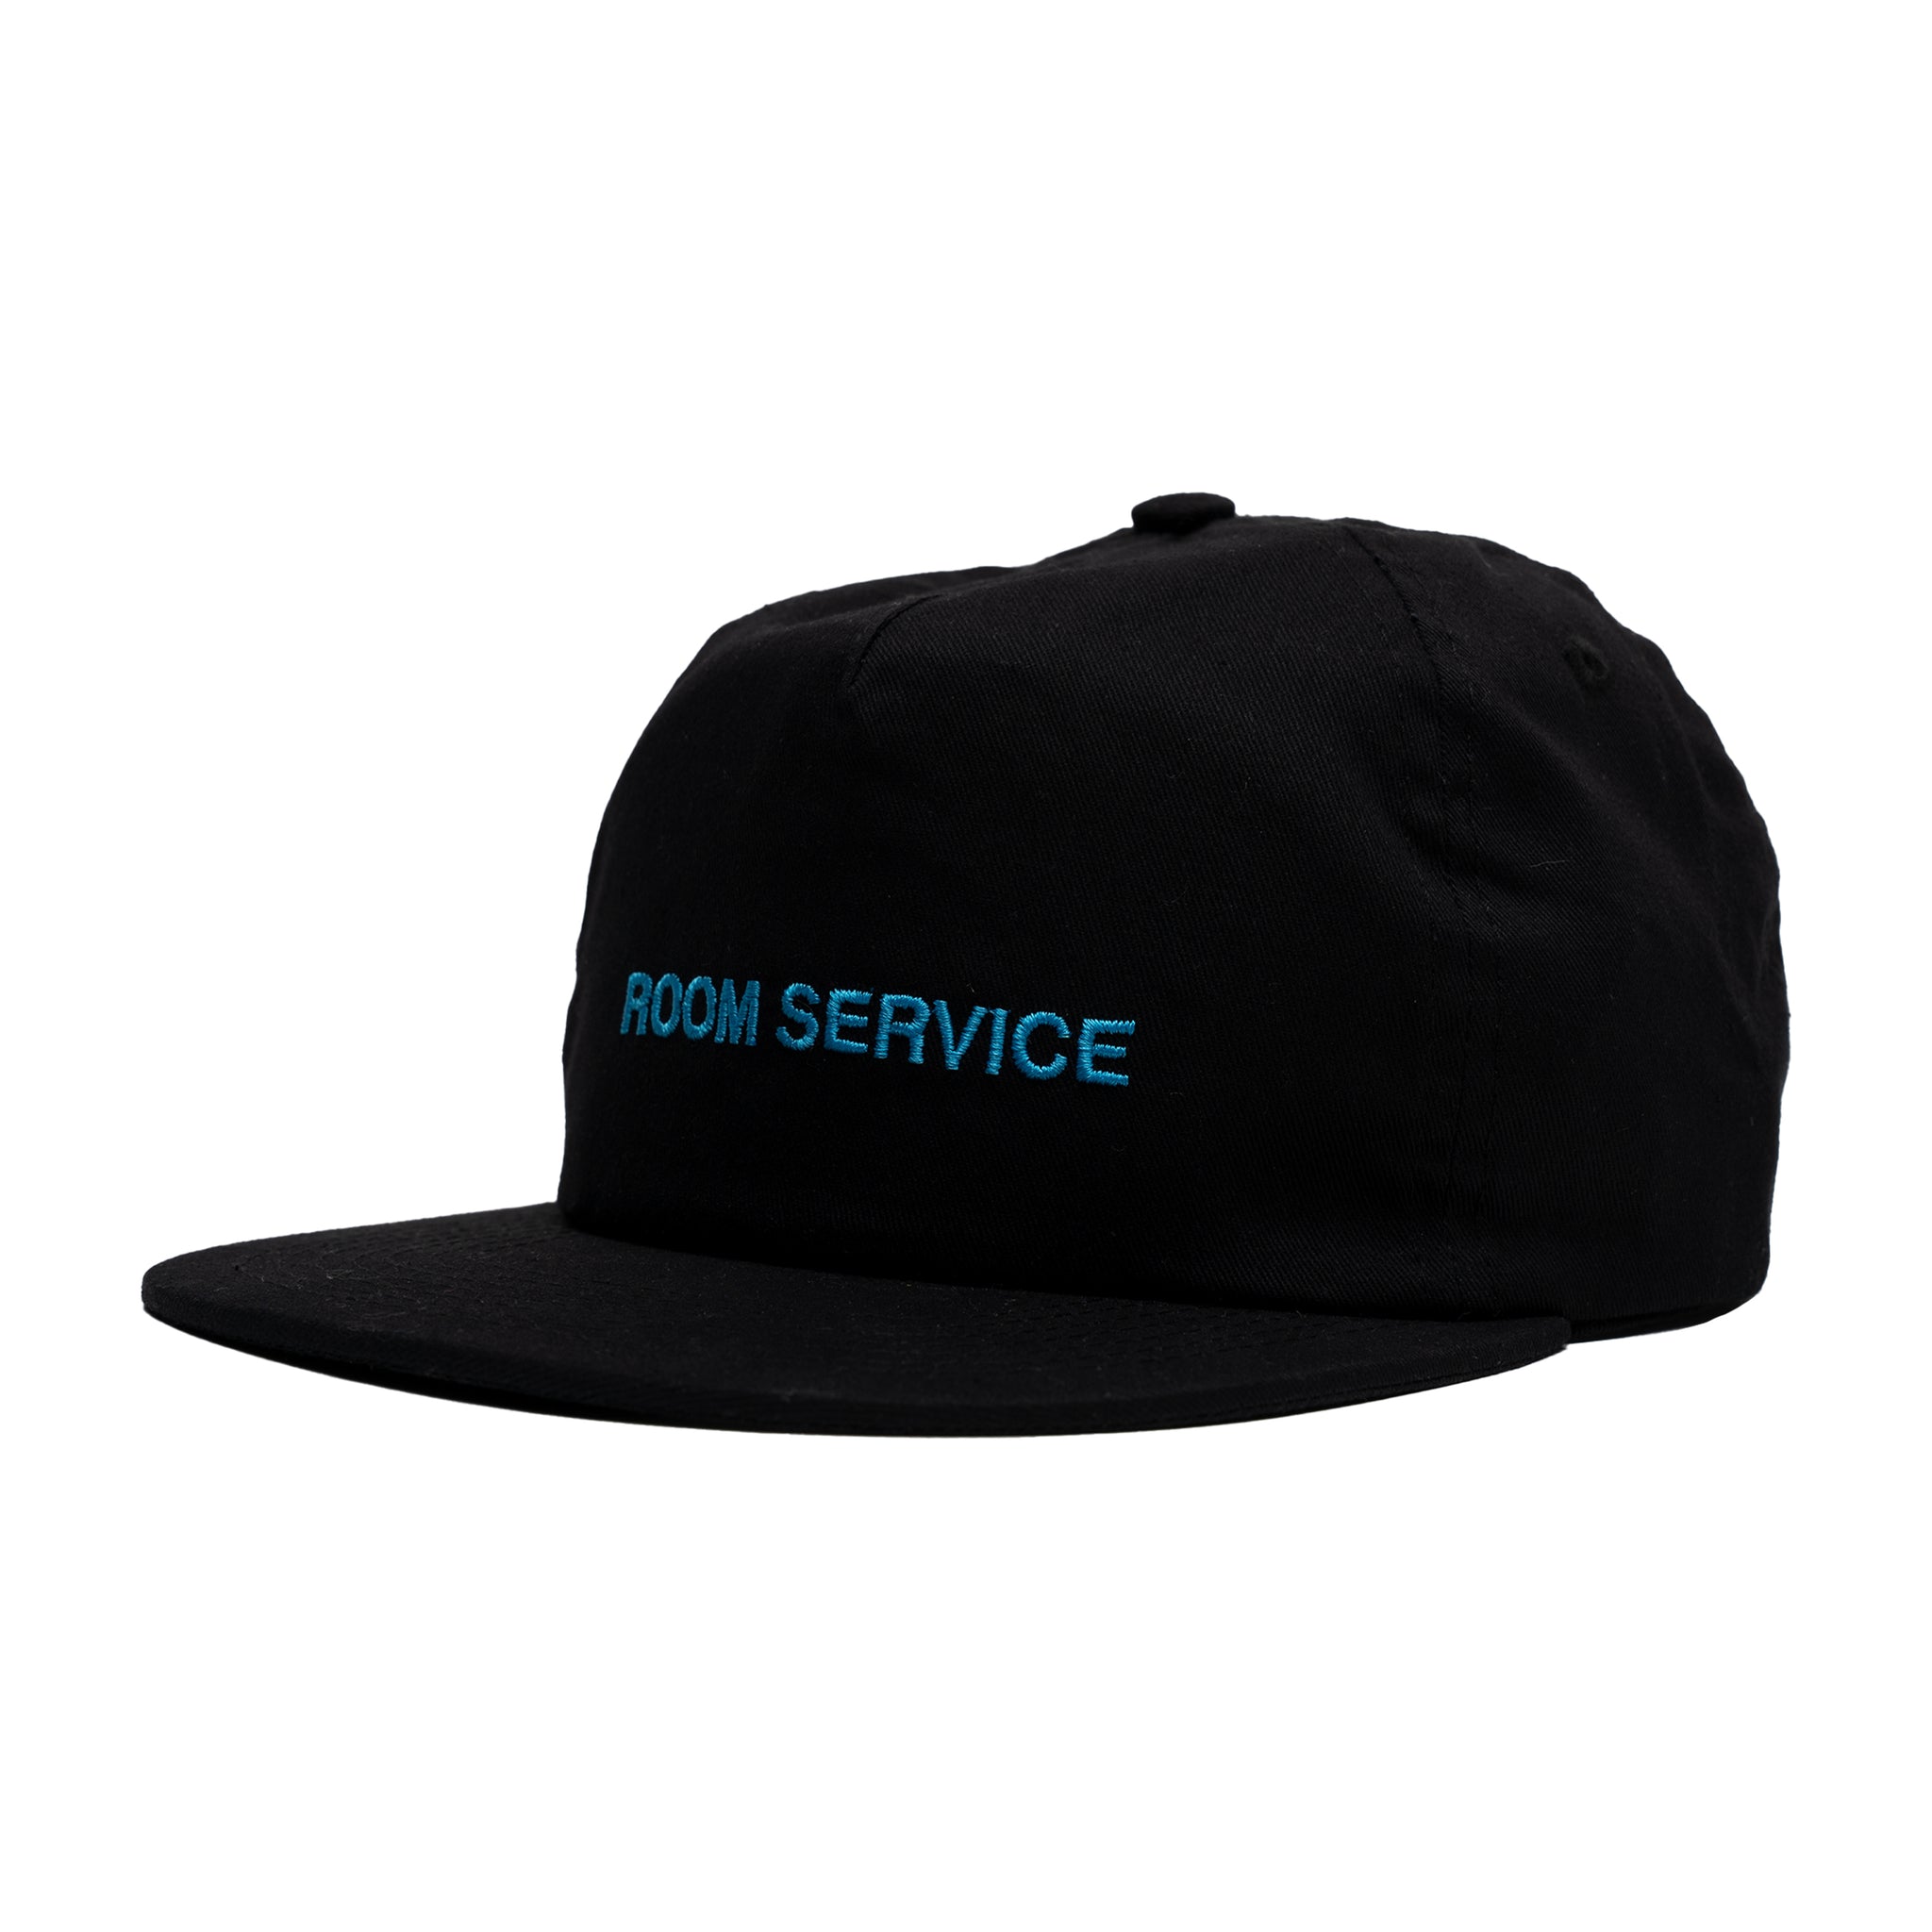 ROOM SERVICE CAP